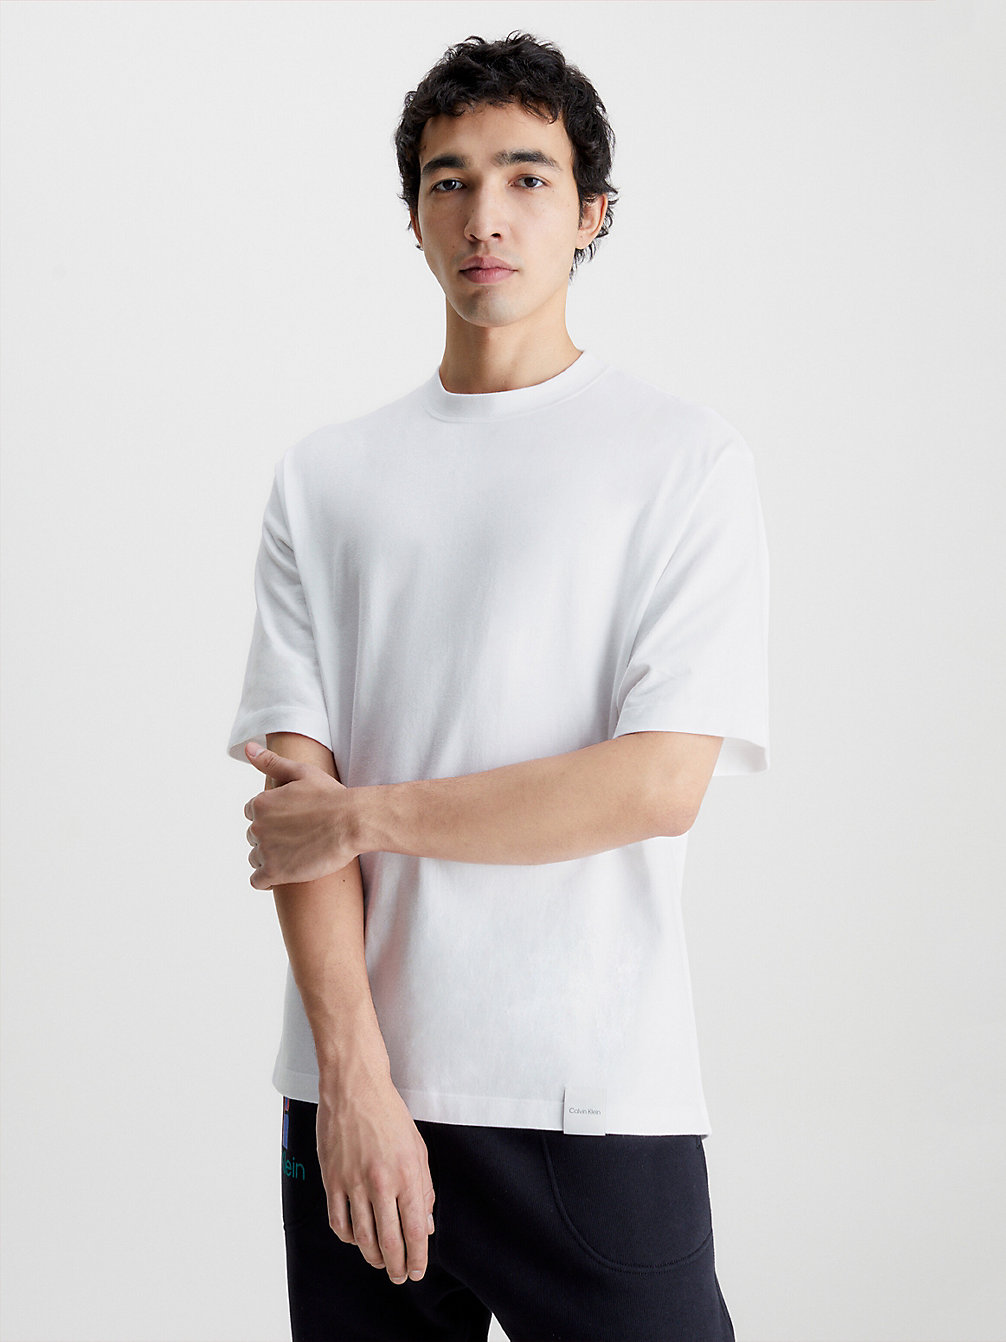 BRILLIANT WHITE > Lässiges Unisex-T-Shirt – CK Standards > undefined Herren - Calvin Klein